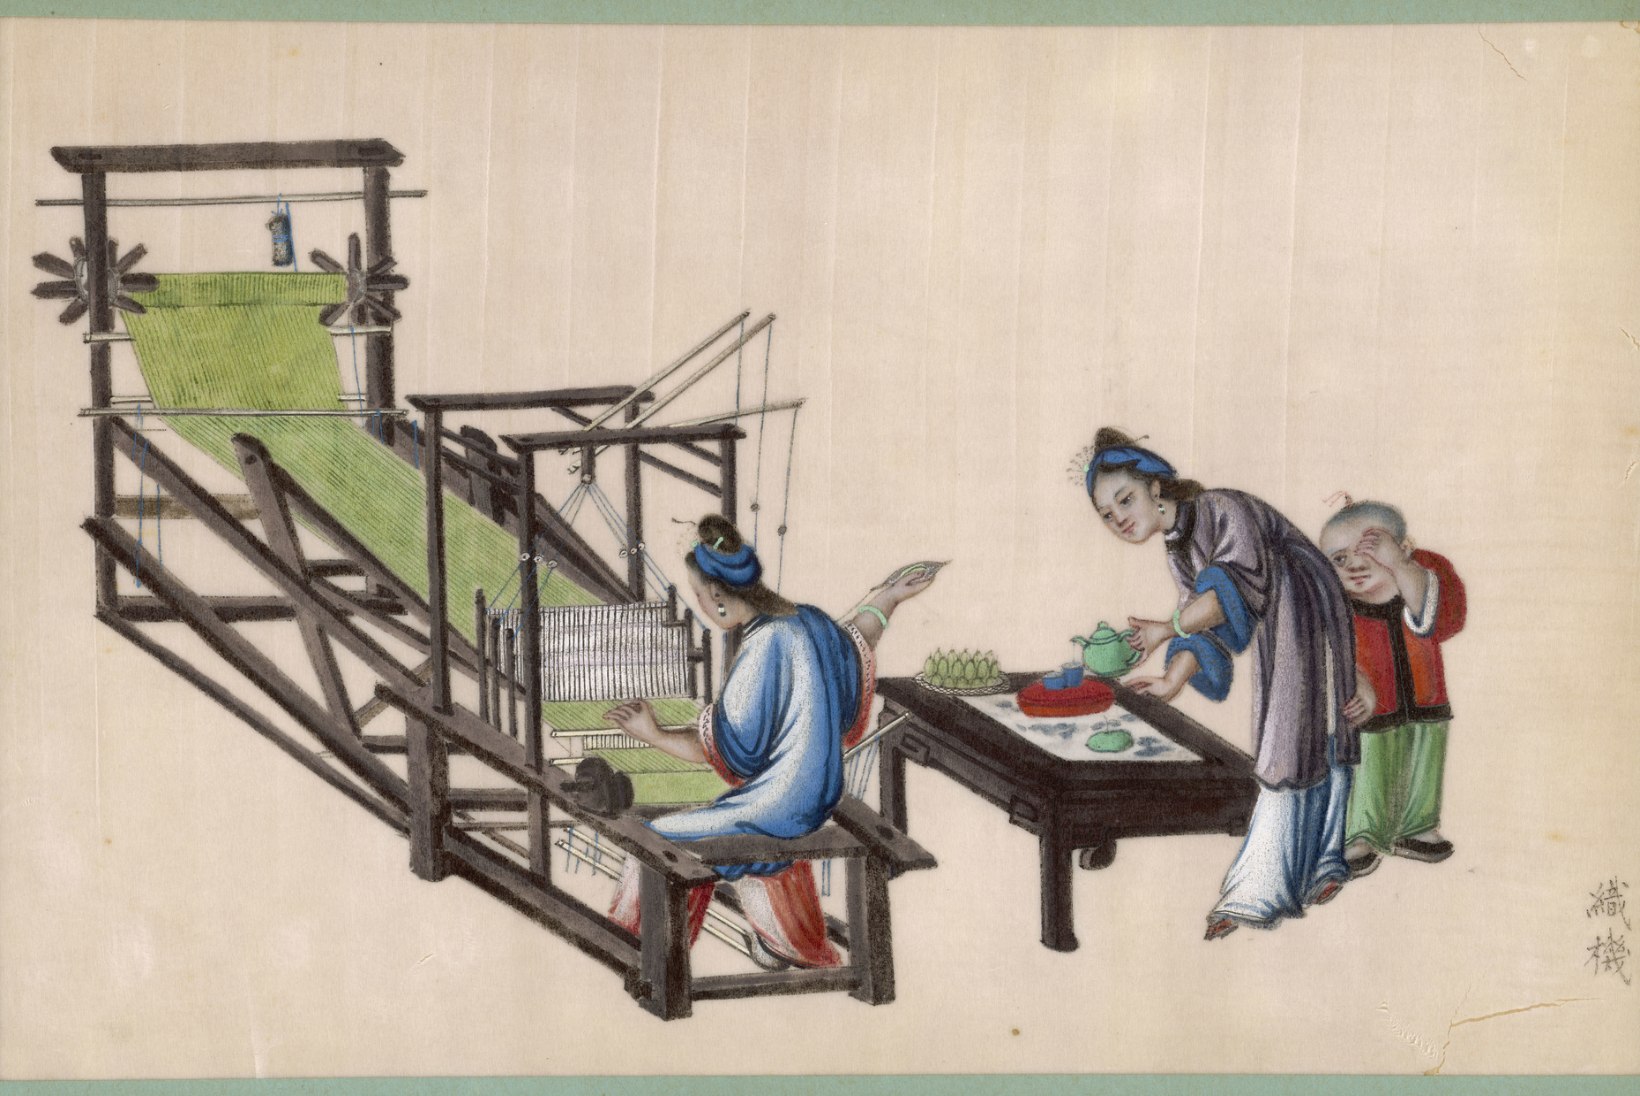 Luksusliku siidi valmistamine oli sajandeid hiinlaste hästi hoitud saladus